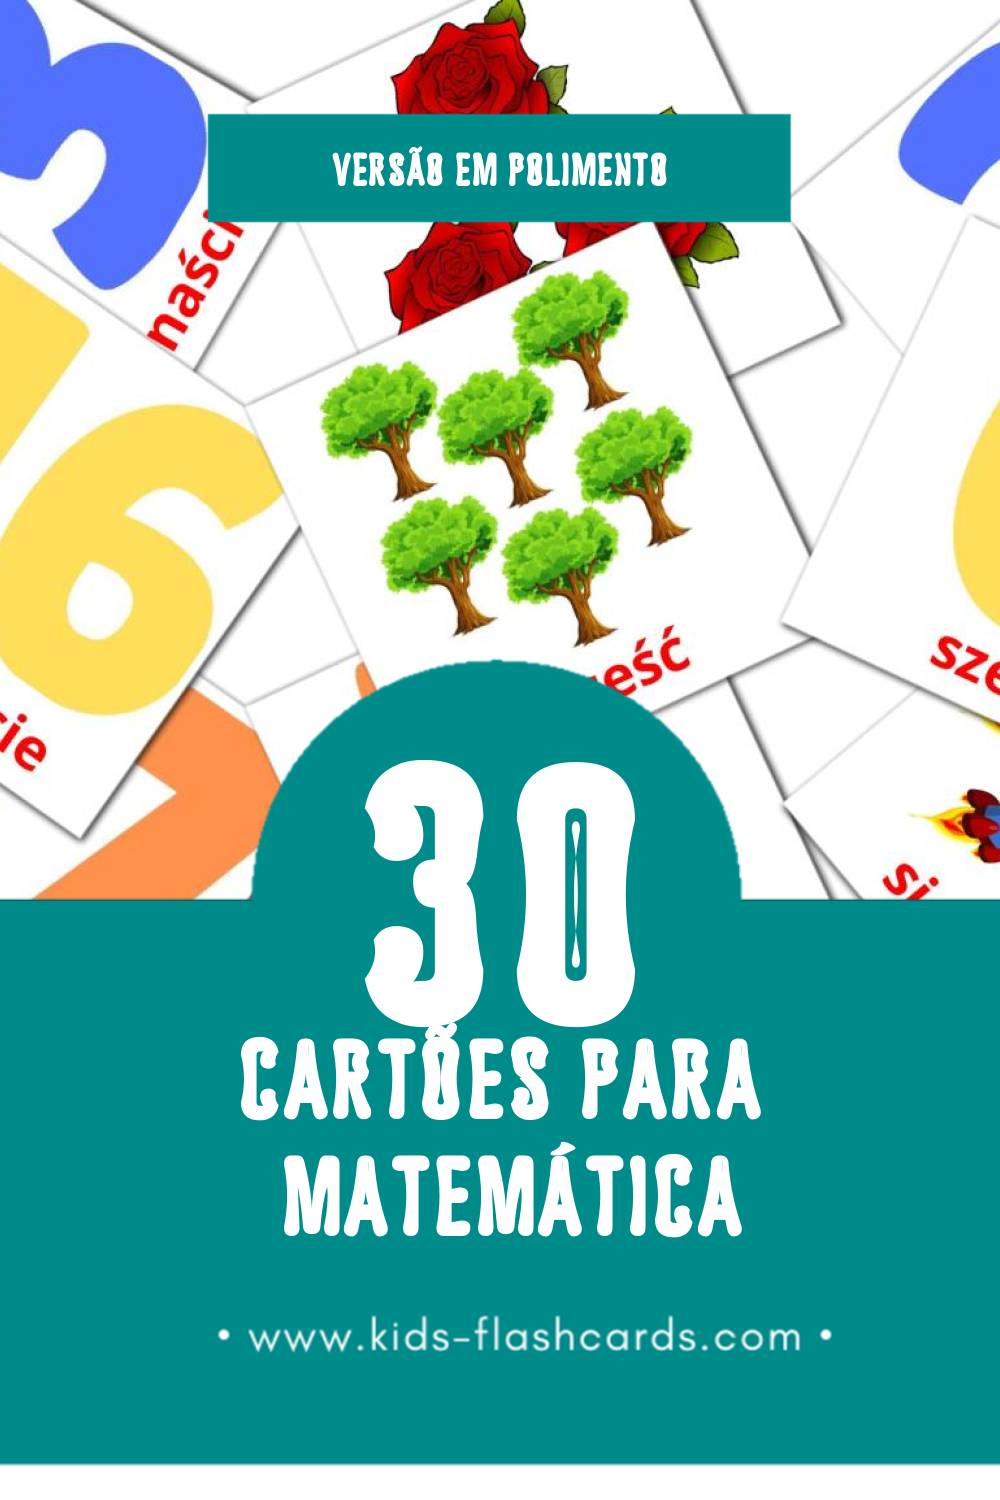 Flashcards de Matematyka Visuais para Toddlers (30 cartões em Polimento)